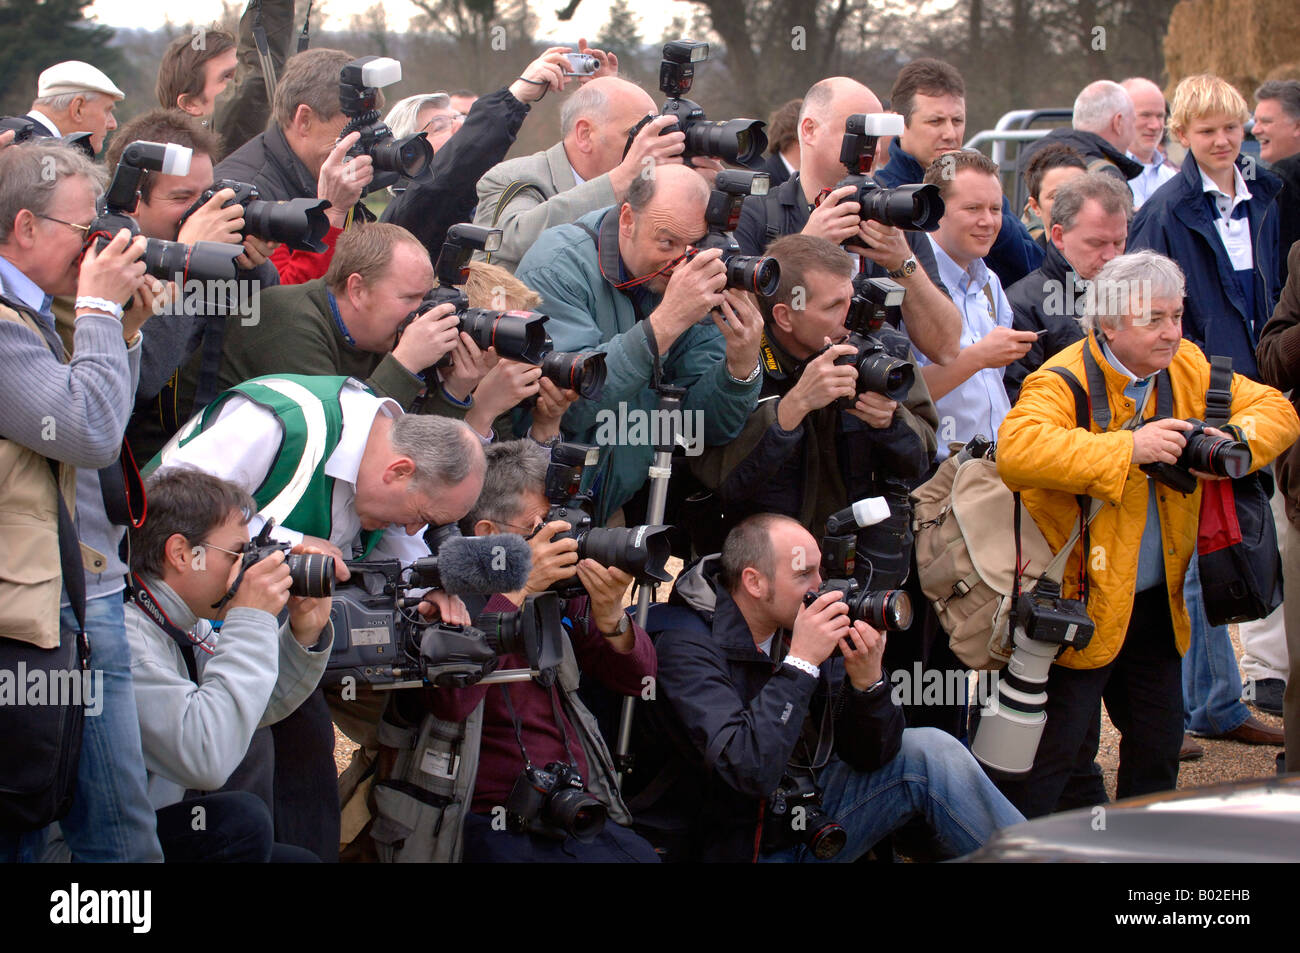 Pacchetto stampa: Una folla di fotografi che si esibisce per ottenere il meglio durante una chiamata fotografica. Foto Stock